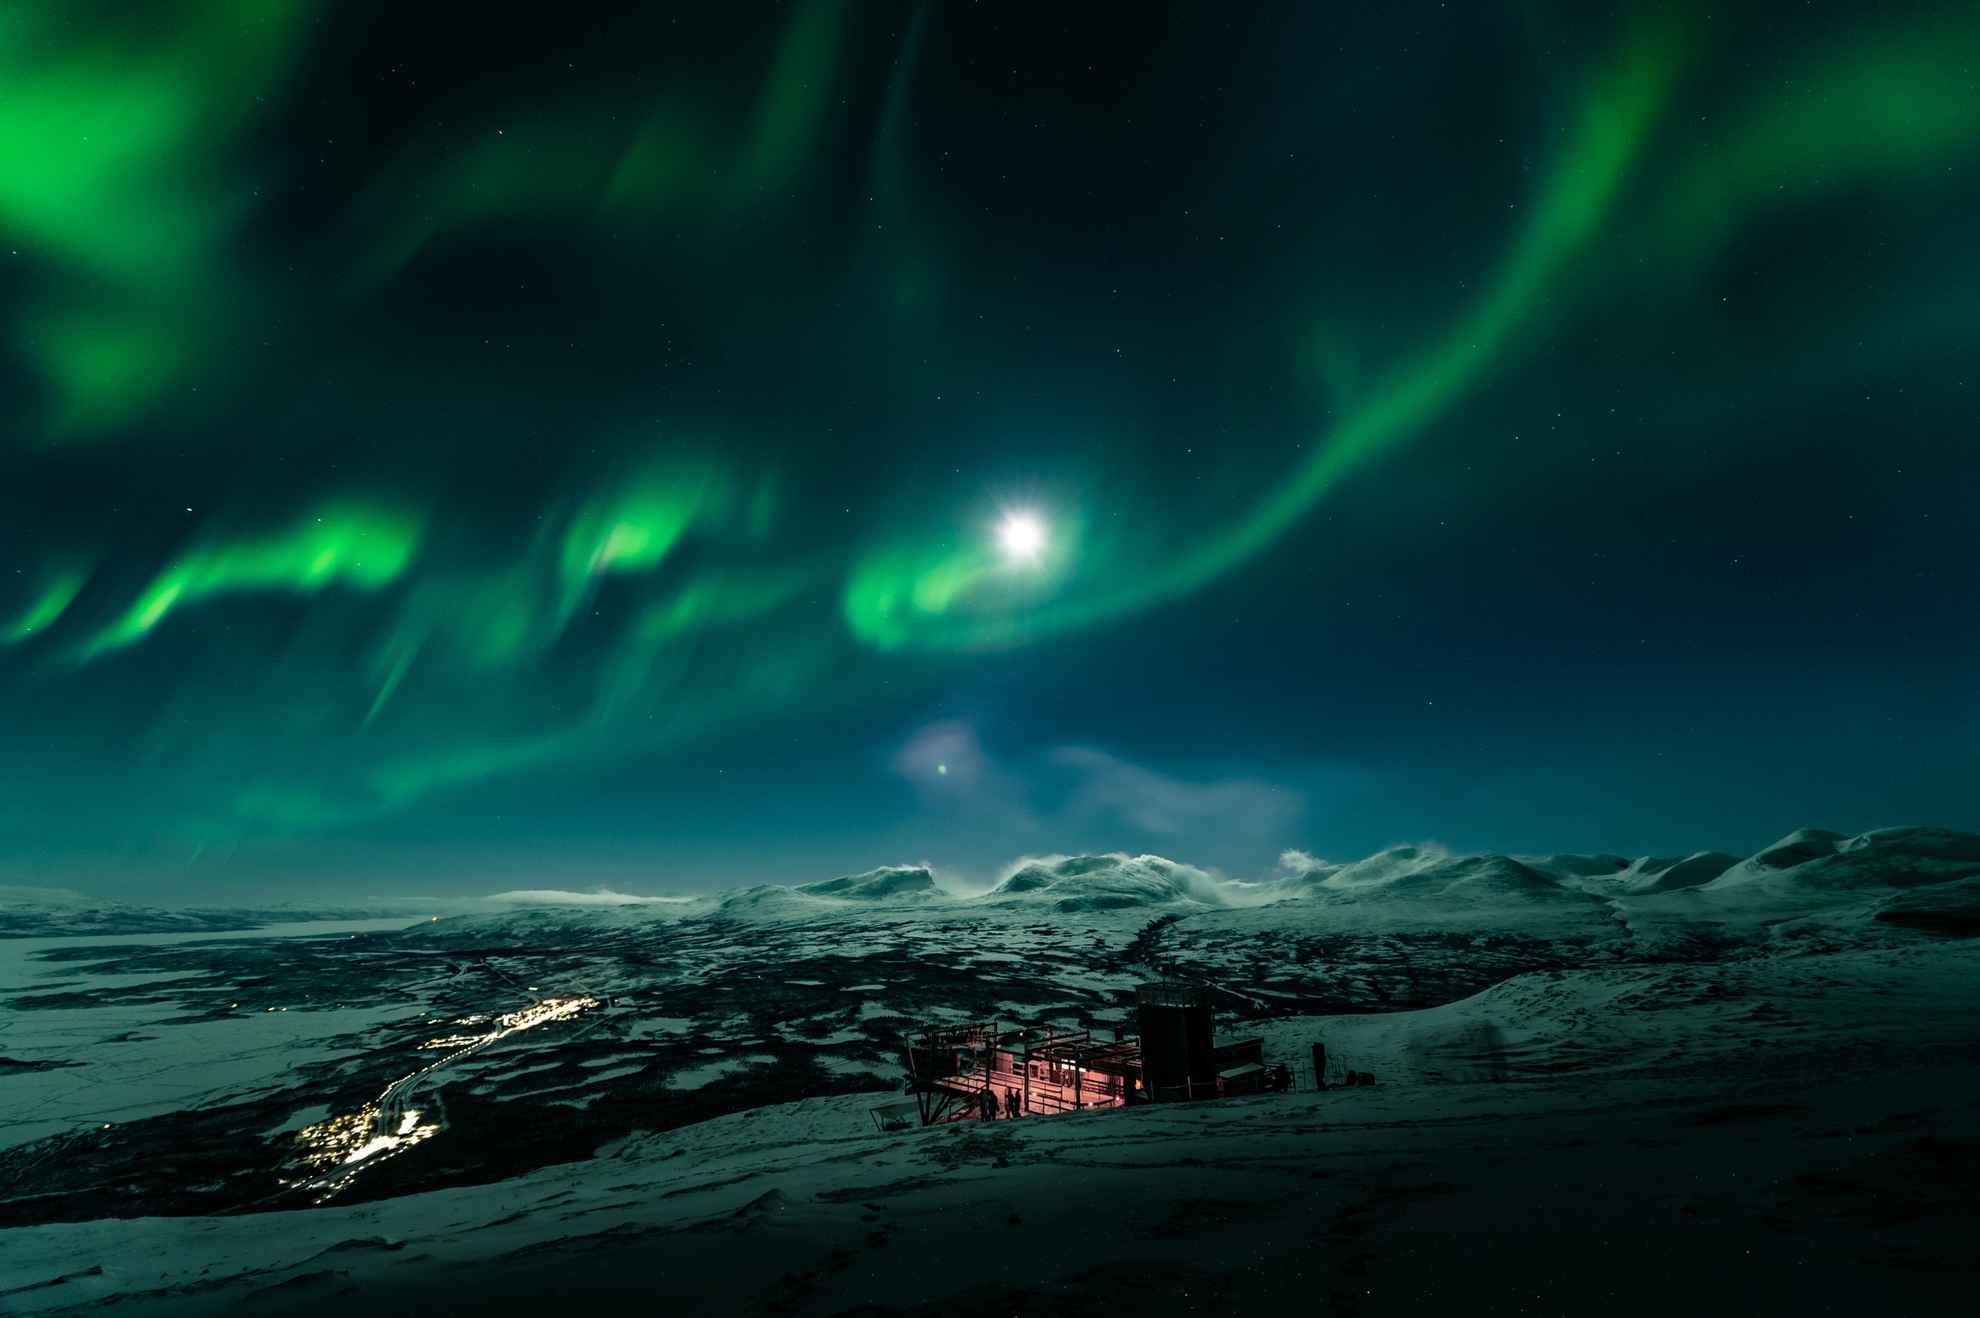 Nordlichter tanzen am Himmel über der Aurora Sky Station auf dem Berg Nuolja in Abisko, Schwedisch Lappland.